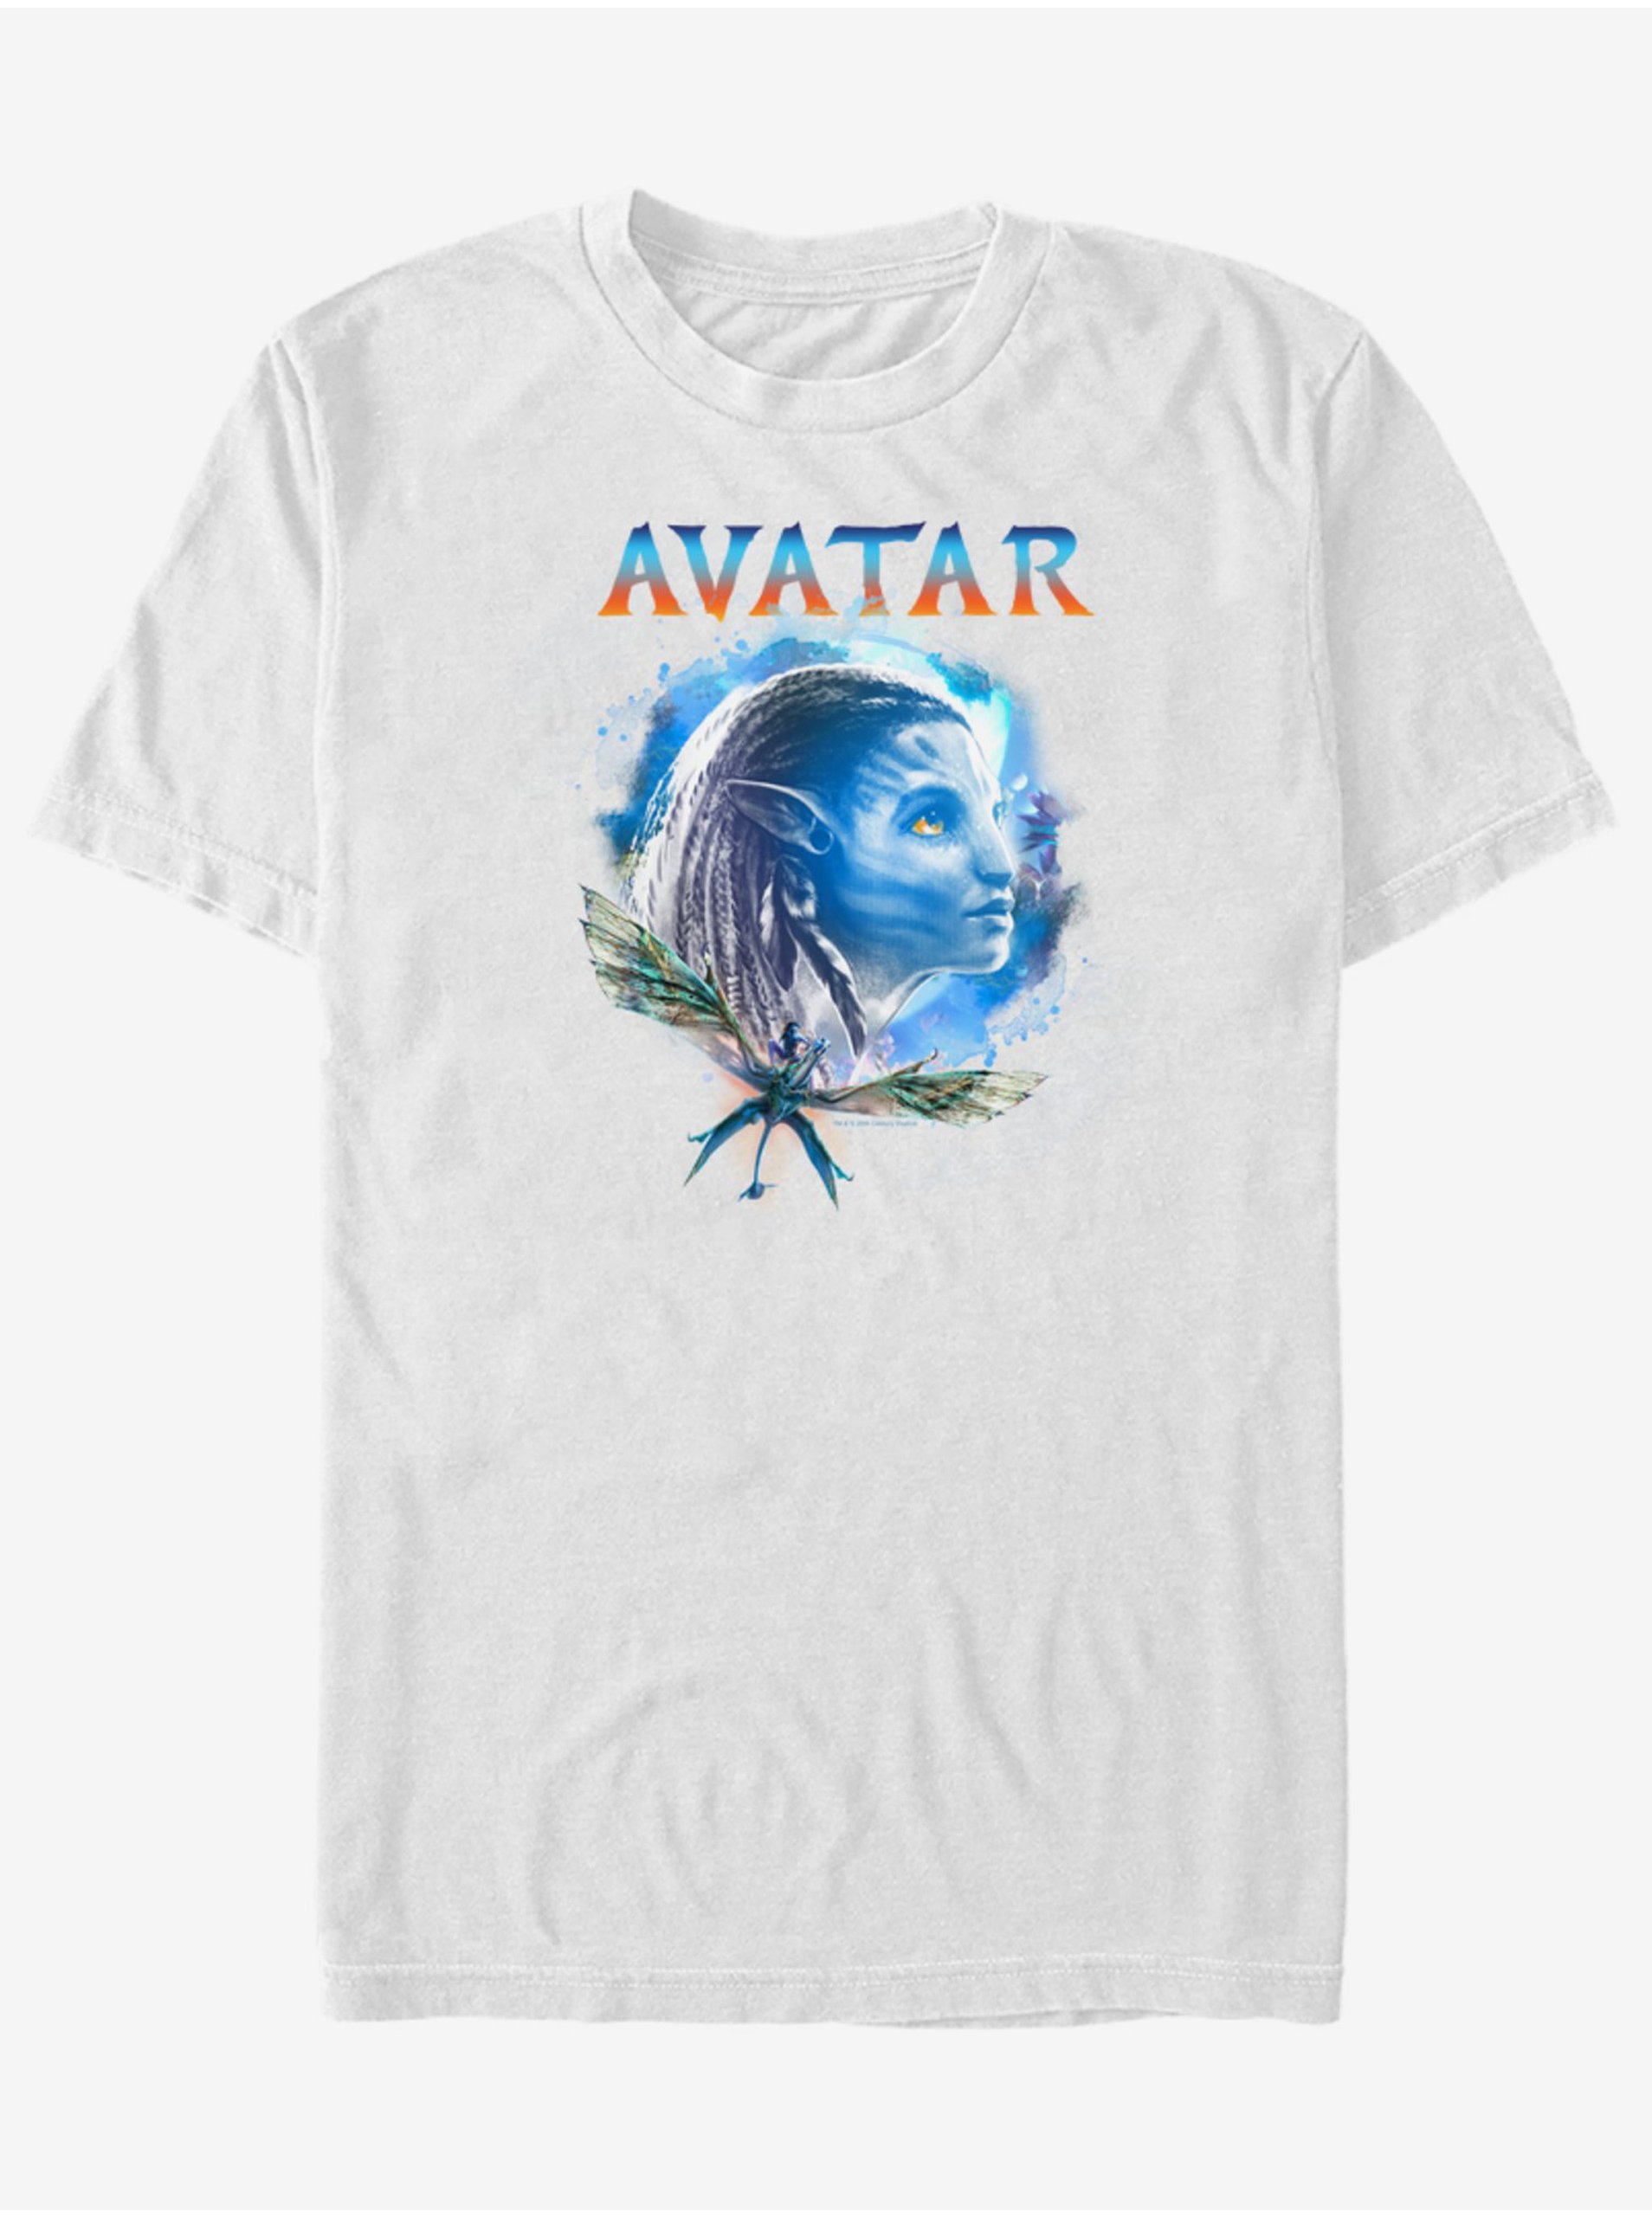 Lacno Neytiri Avatar 2 ZOOT.FAN Twentieth Century Fox - unisex tričko